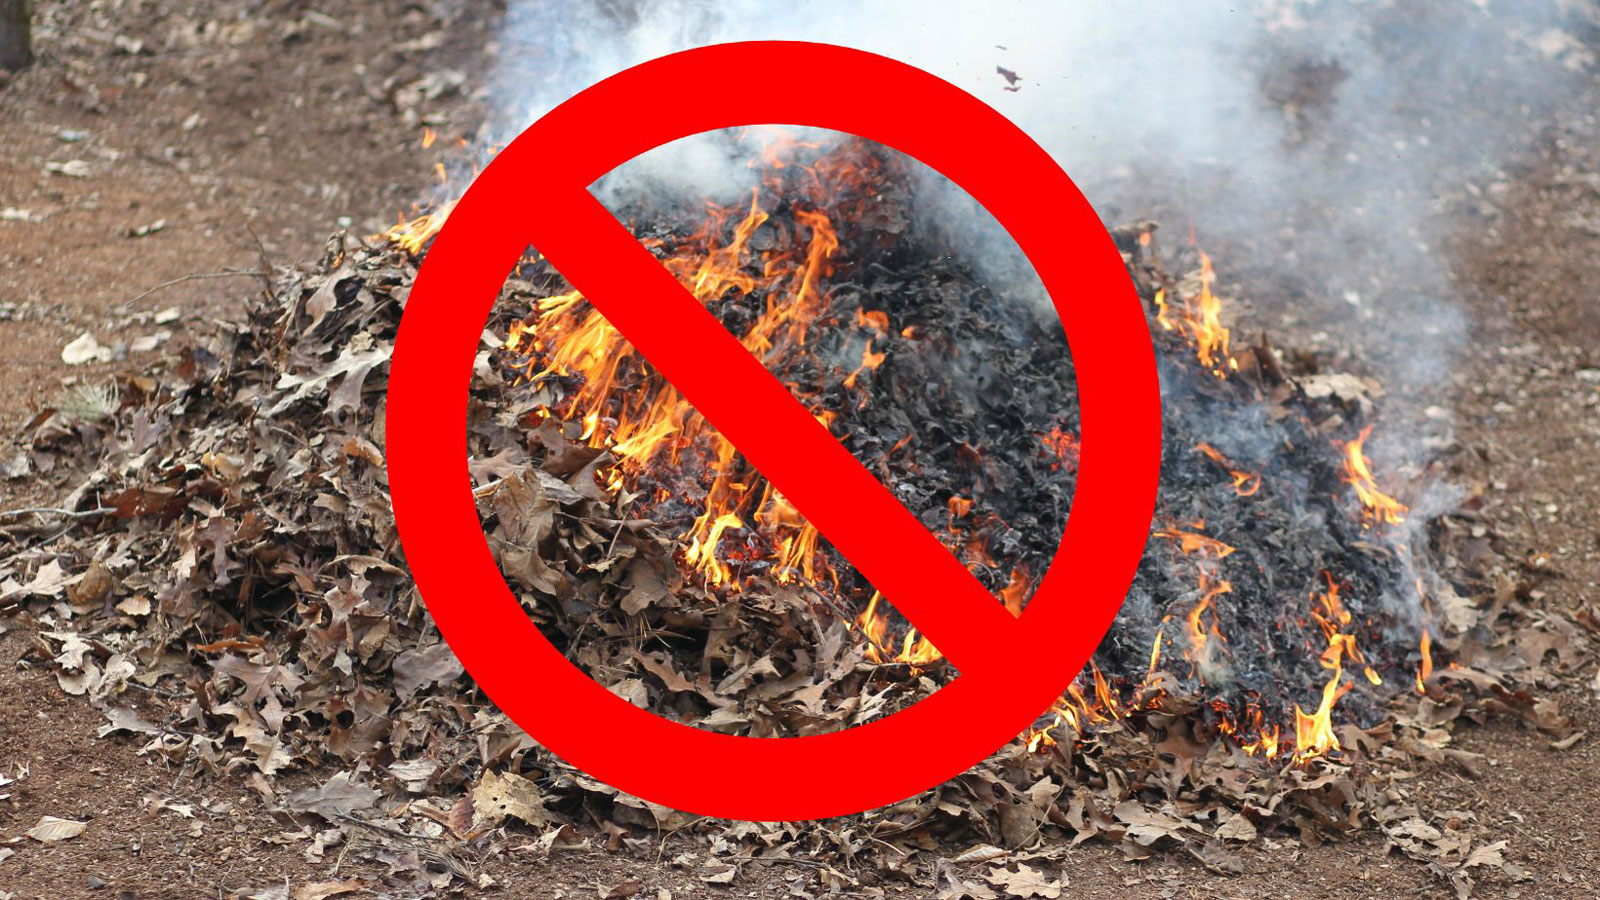 Fire restrictions lowered beginning Oct. 14; outdoor debris burning still banned